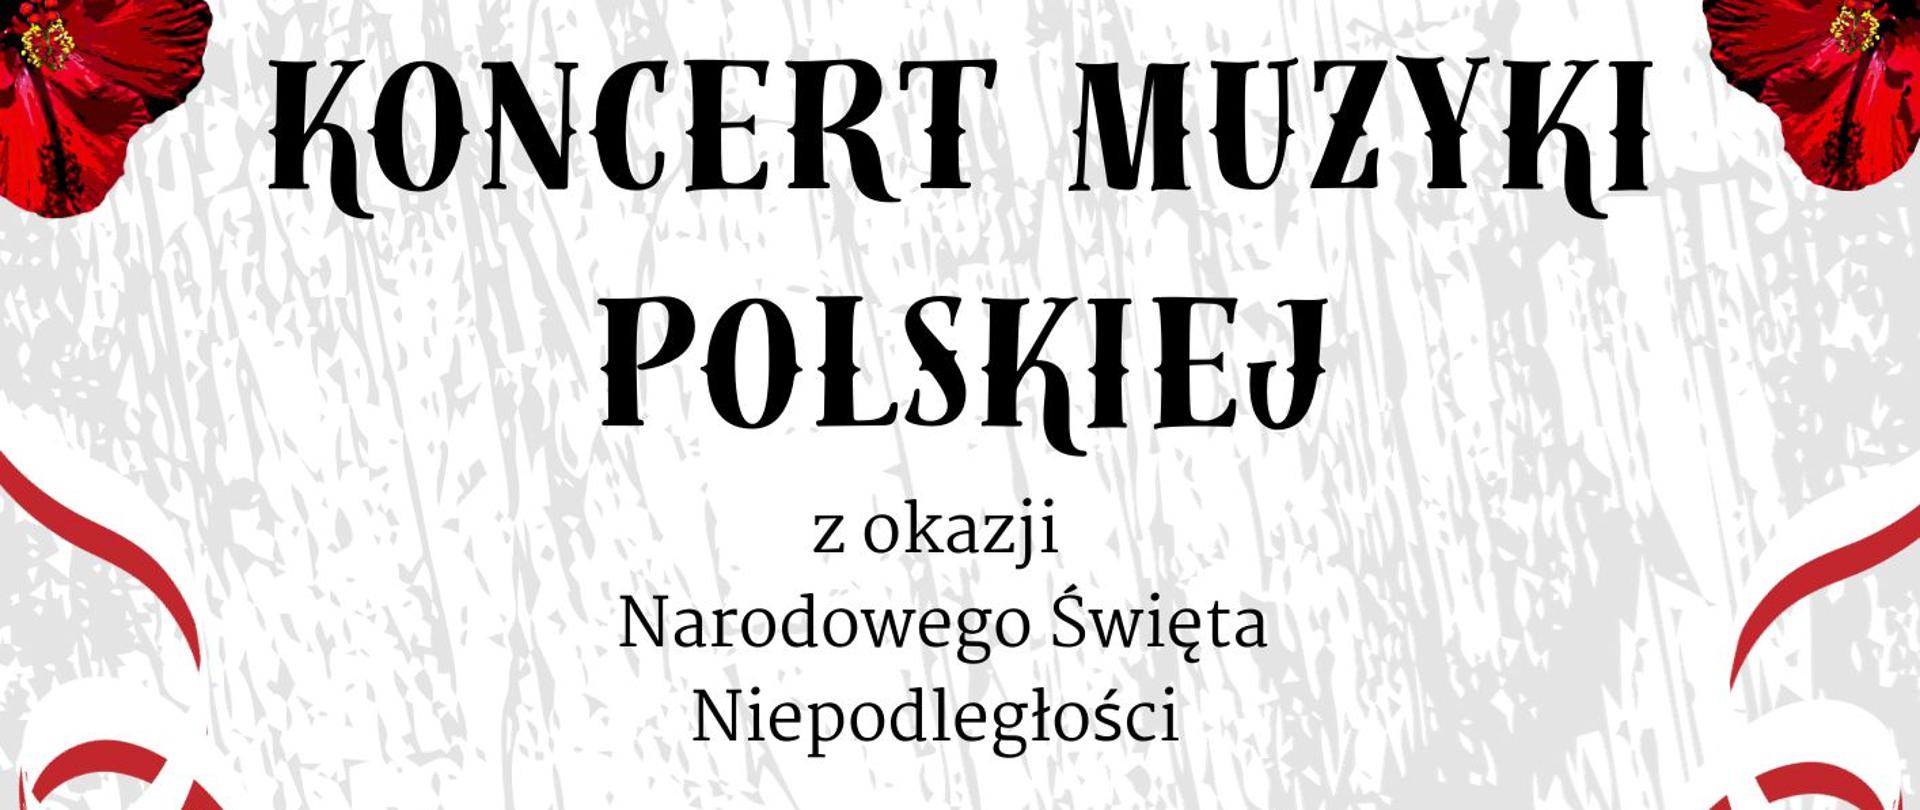 Plakat na koncert muzyki polskiej z okazji święta 11 listopada. Na dole czarne postaci żołnierzy z karabinami. Z boku czerwone maki i czarne litery tekstu.